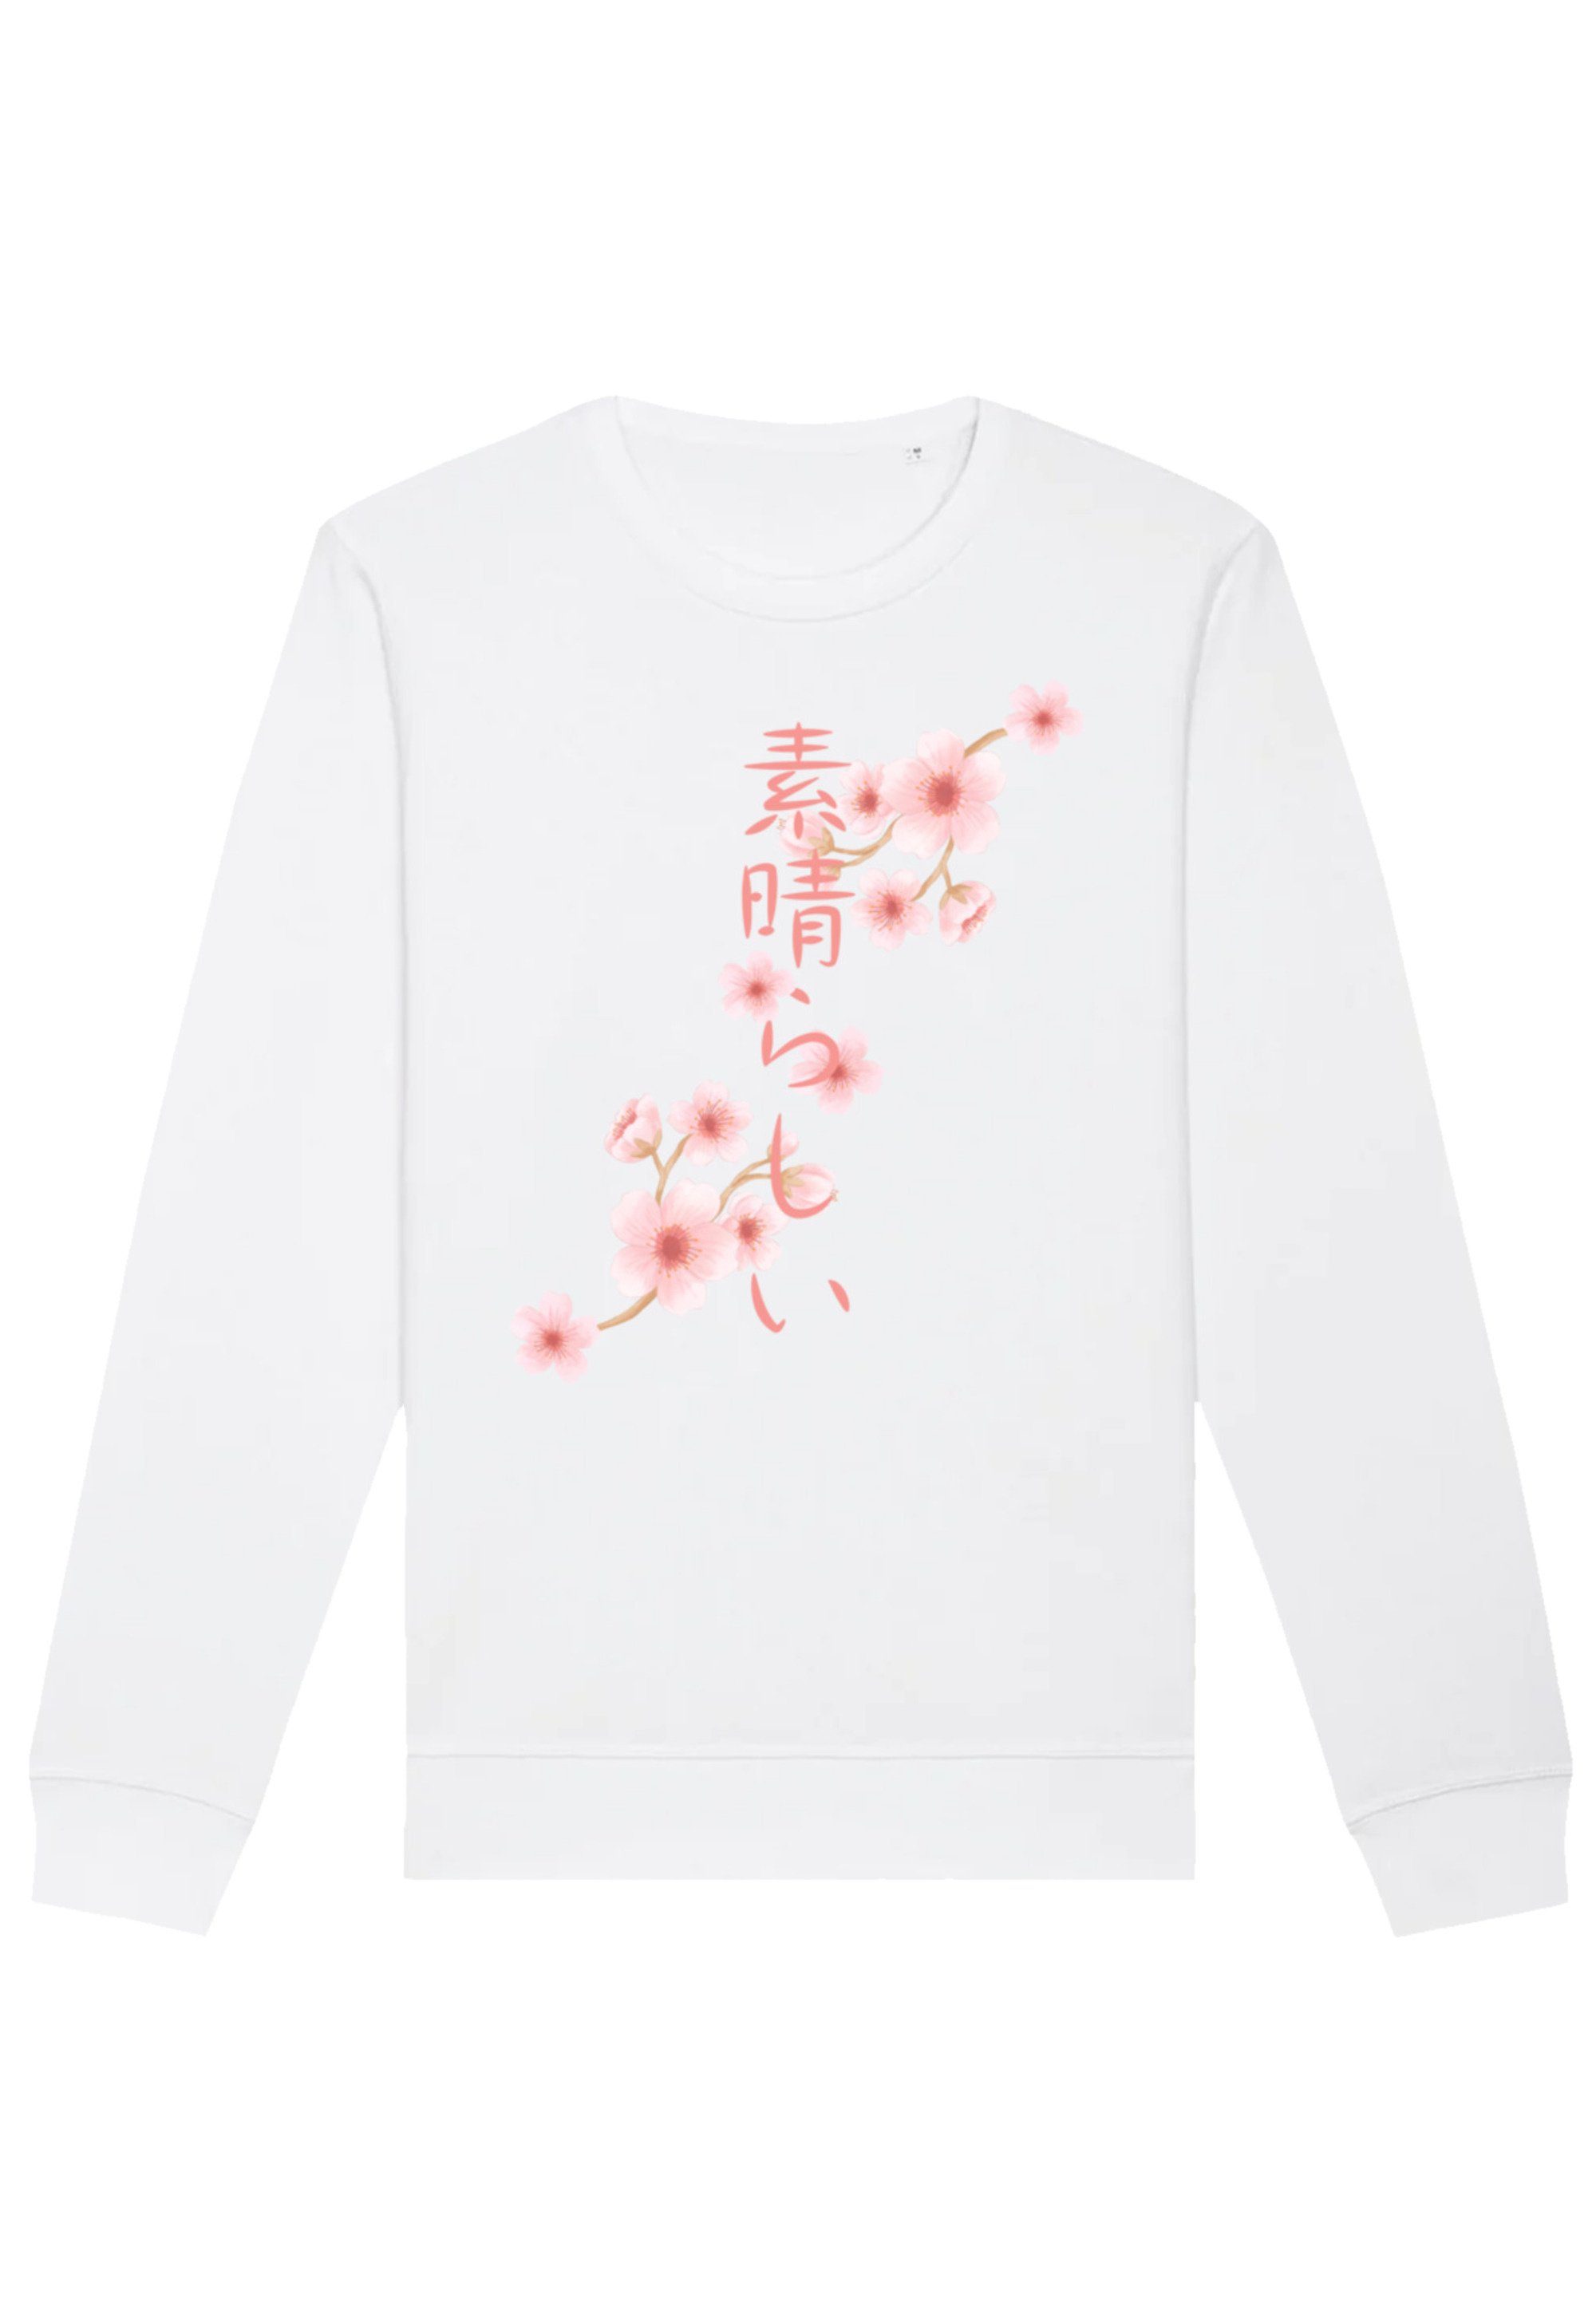 weiß Sweatshirt Kirschblüten Asien Print F4NT4STIC